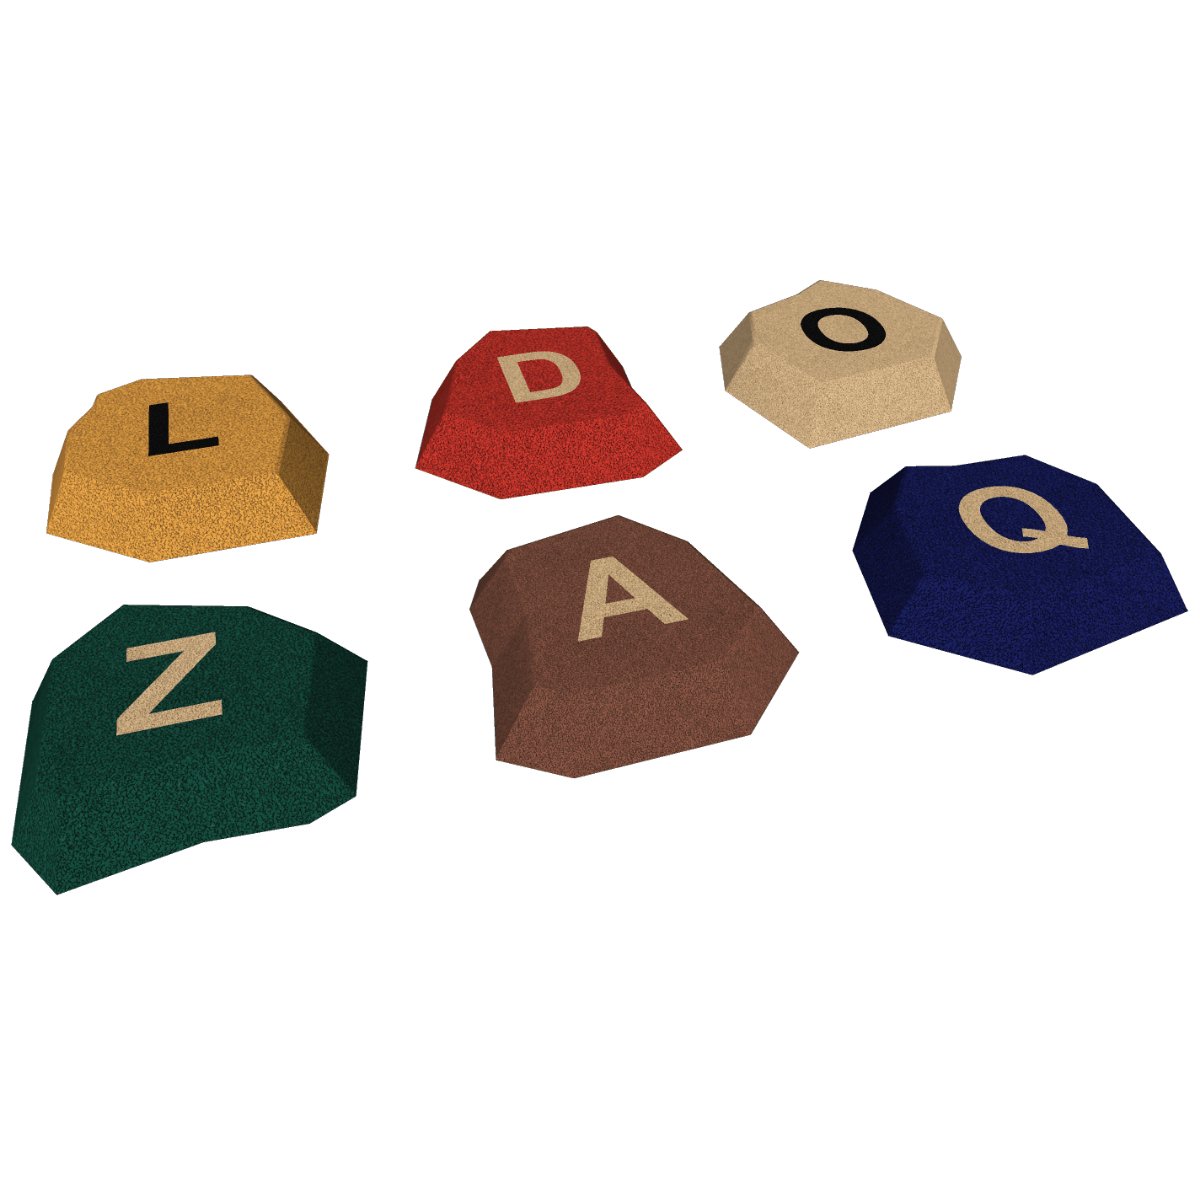 Stein mit Buchstaben (A-Z) 3D Standardfarben - Riteco AG